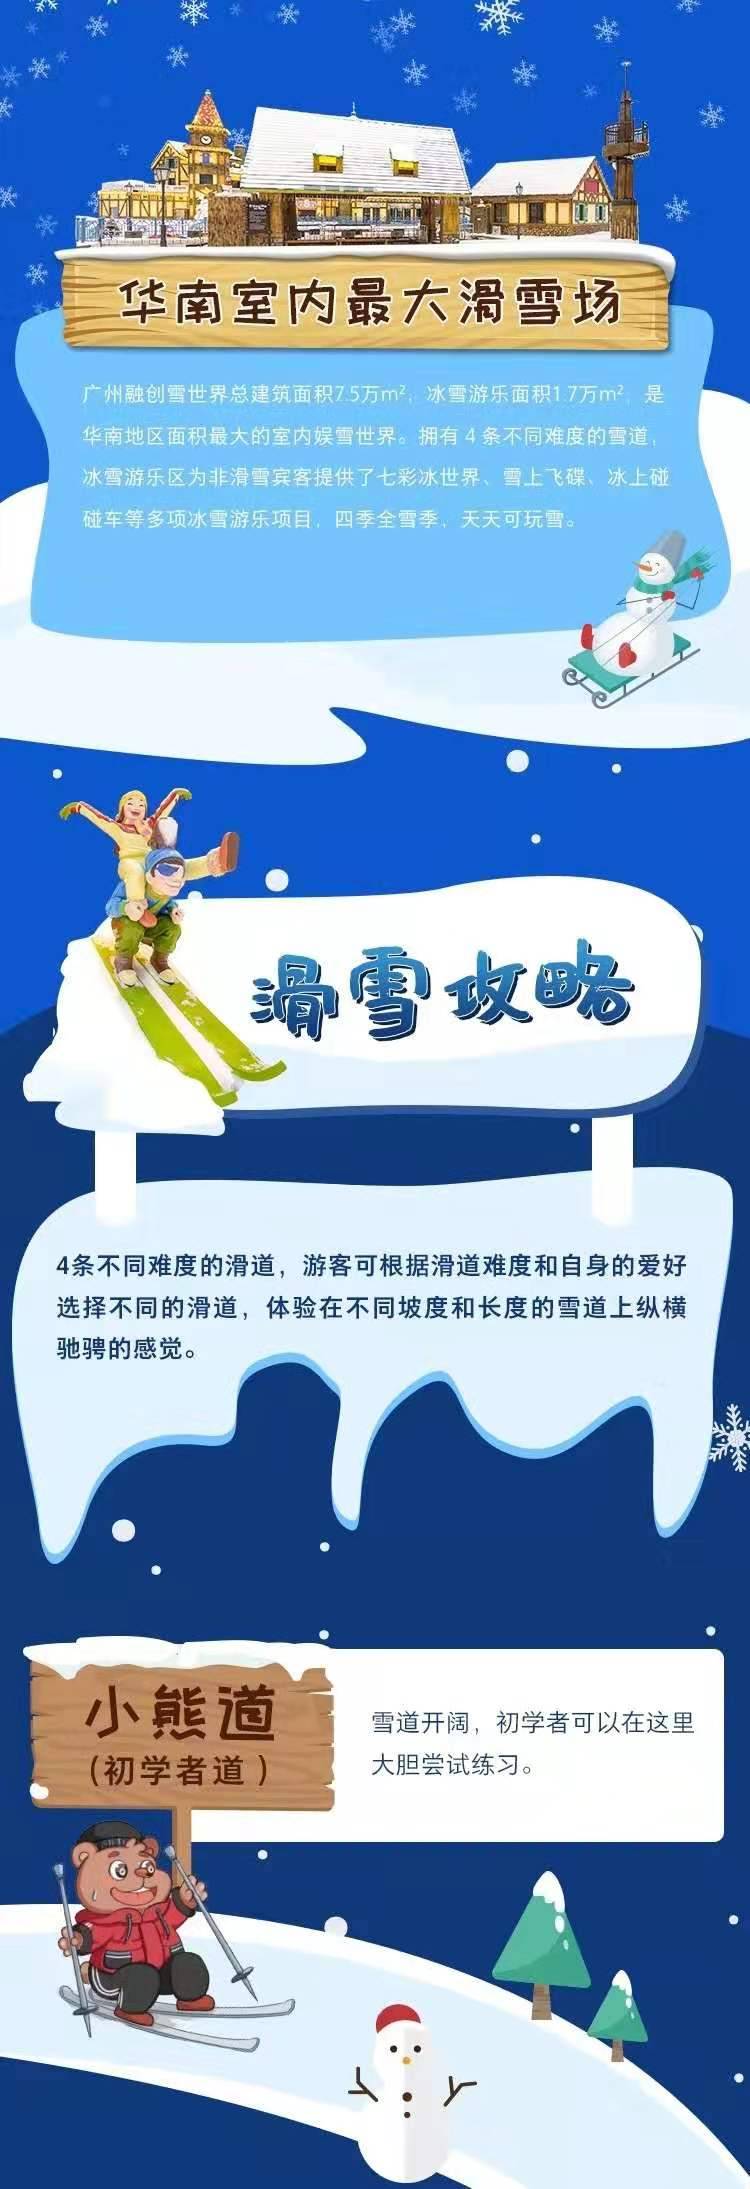 【已开园】广州融创雪世界初级道滑雪3小时票（提前一天，指定日期场次预订）